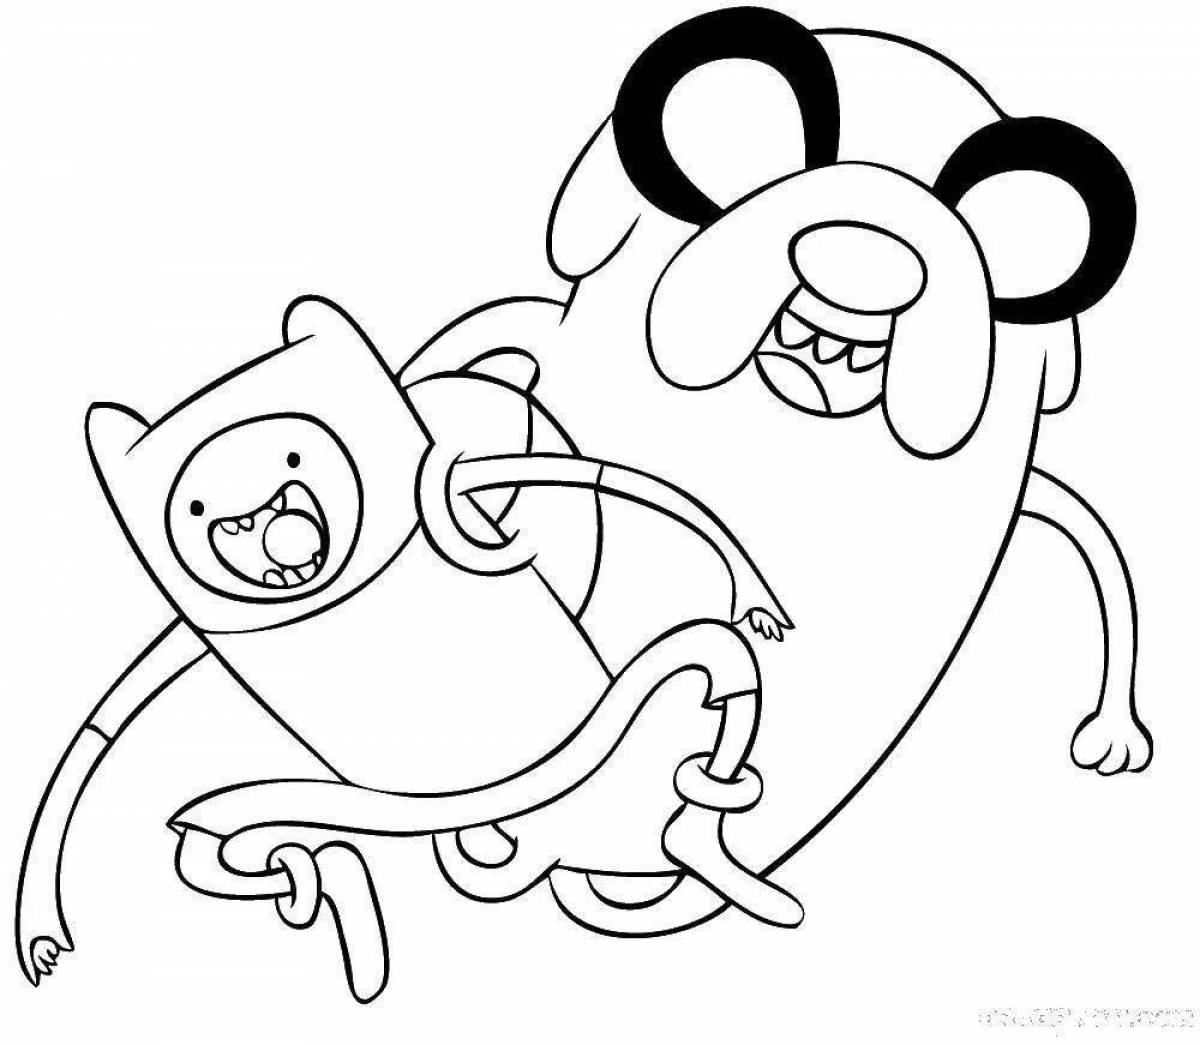 Adventure time jake coloring jake